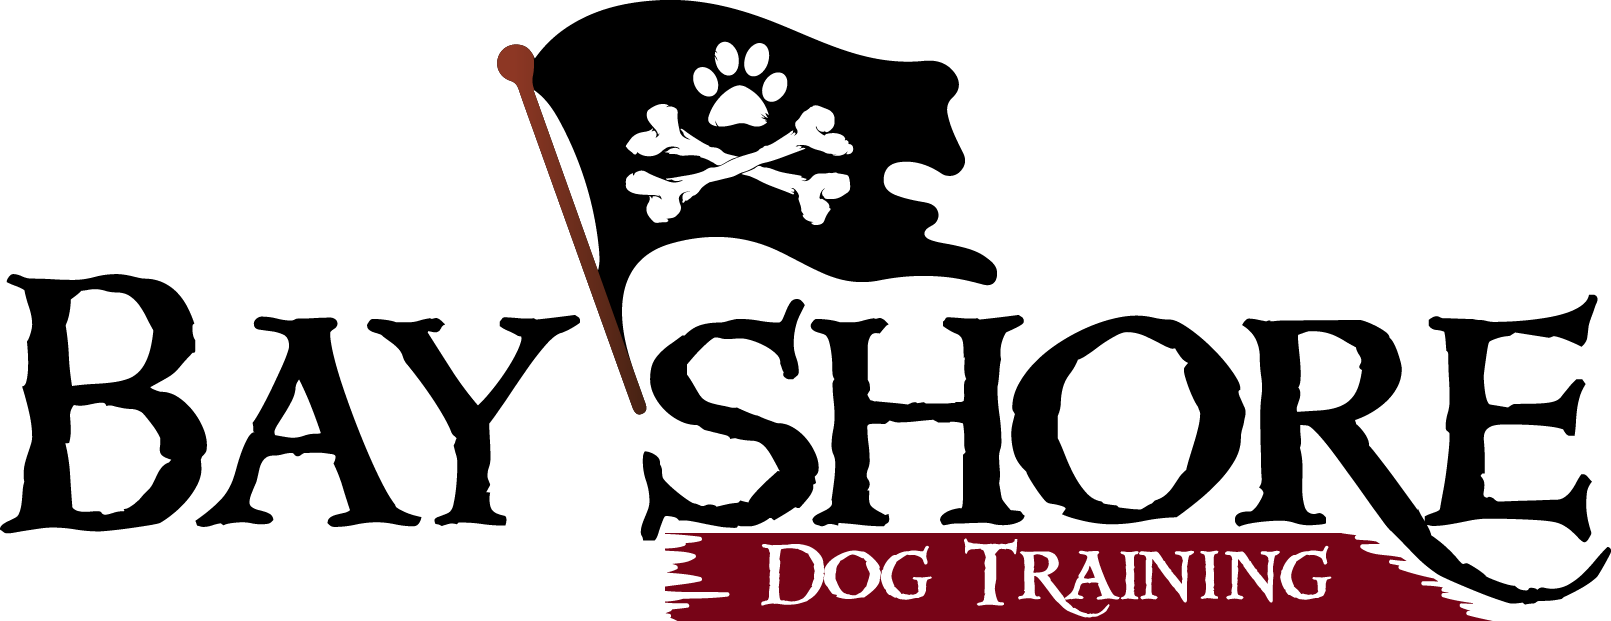 Bayshore Dog Training